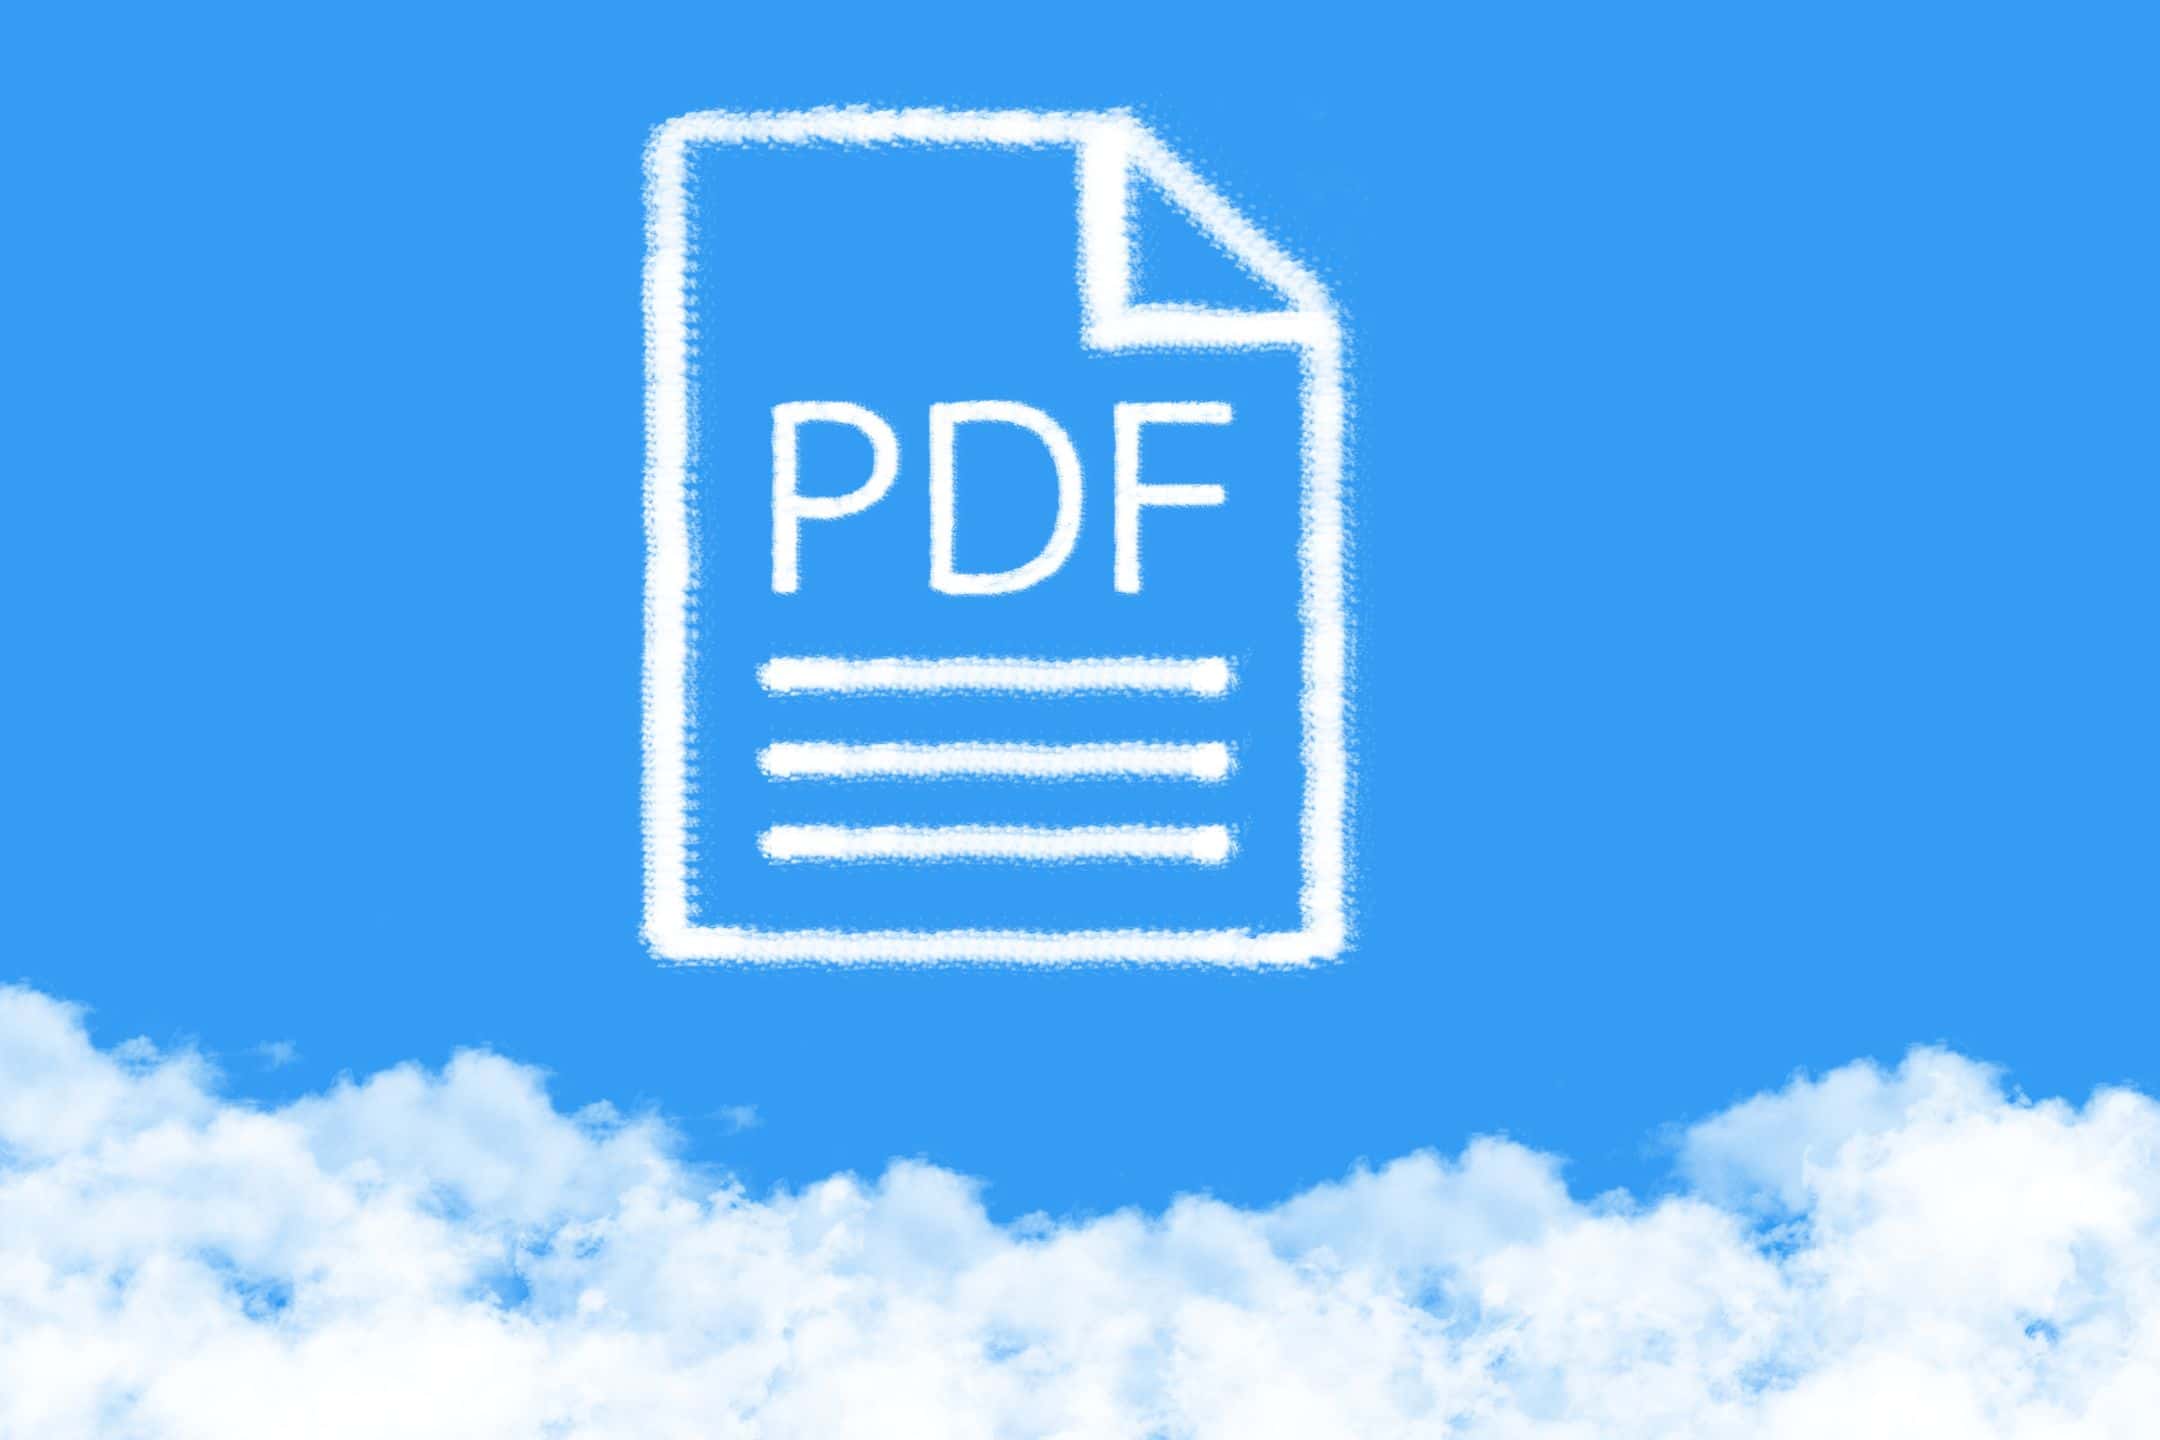 pdf-fil illustration på toppen af skyer på blå himmel